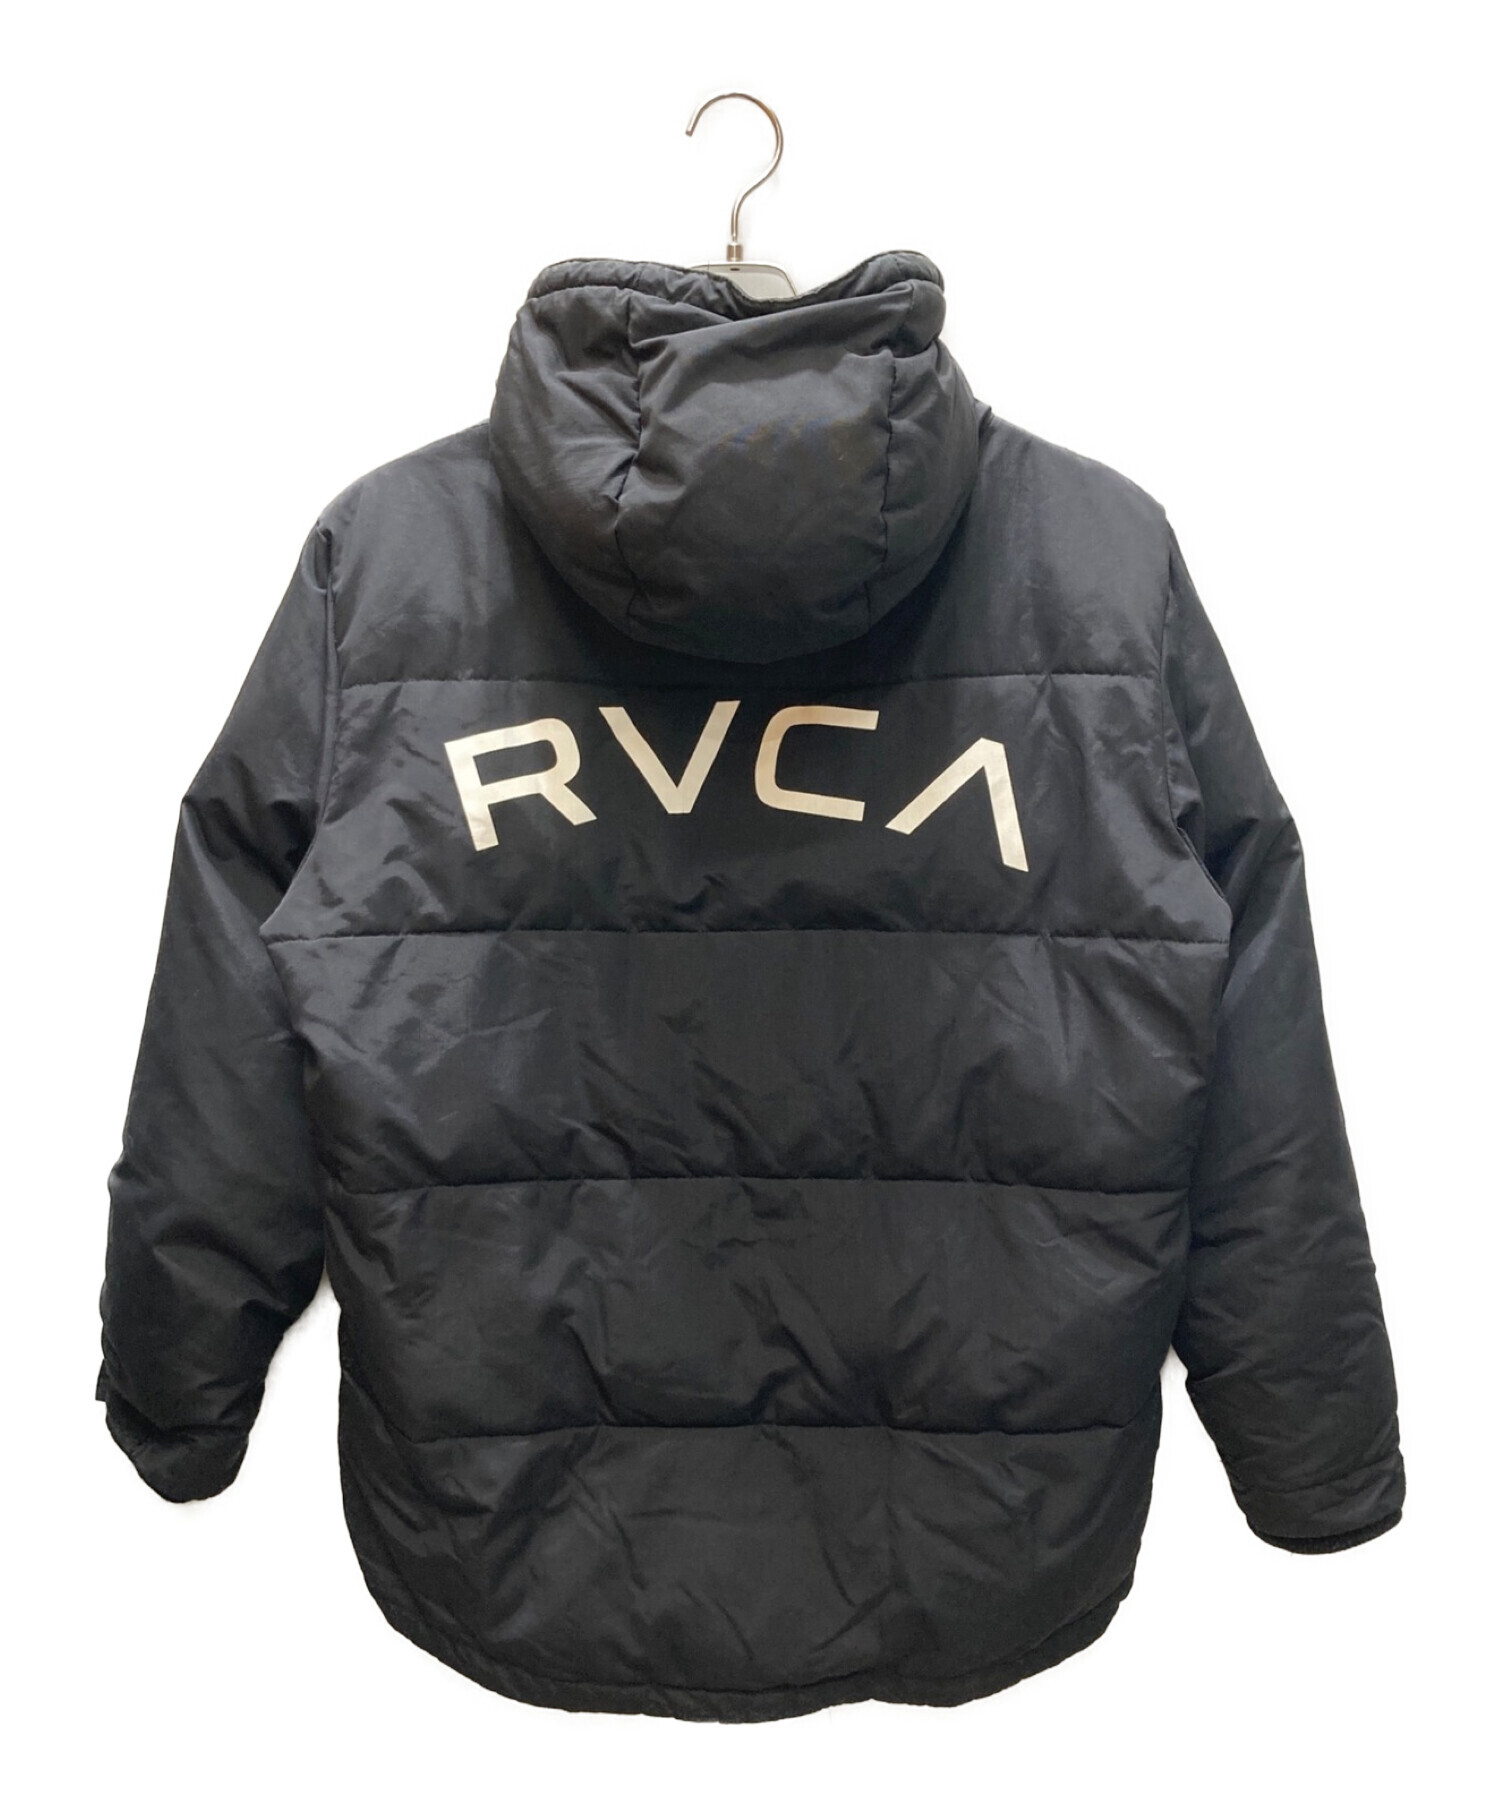 RVCA (ルーカ) 中綿ジャケット ブラック サイズ:M